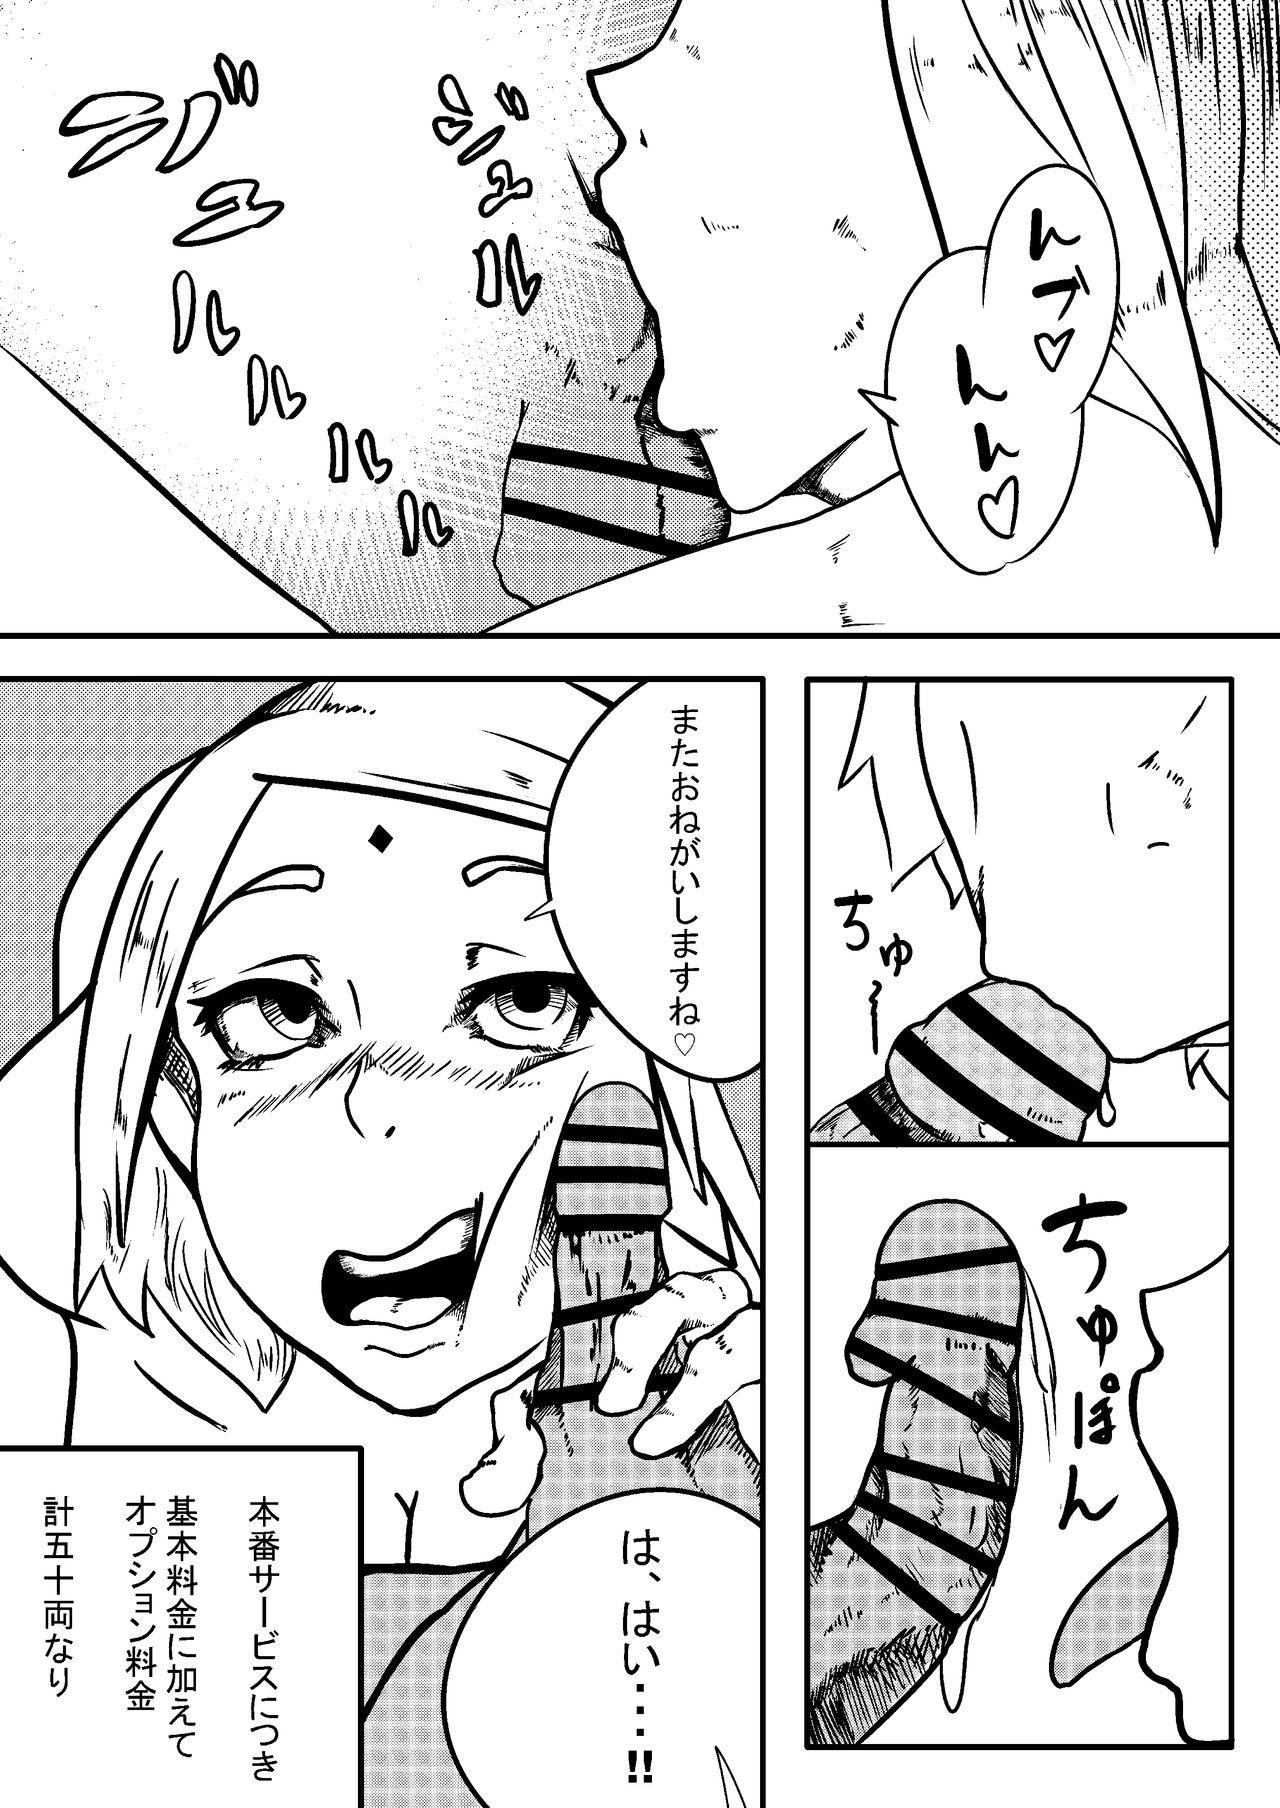 Fucked Hard NARUTOエロ漫画 デリ忍 サクラ - Boruto Comendo - Page 5